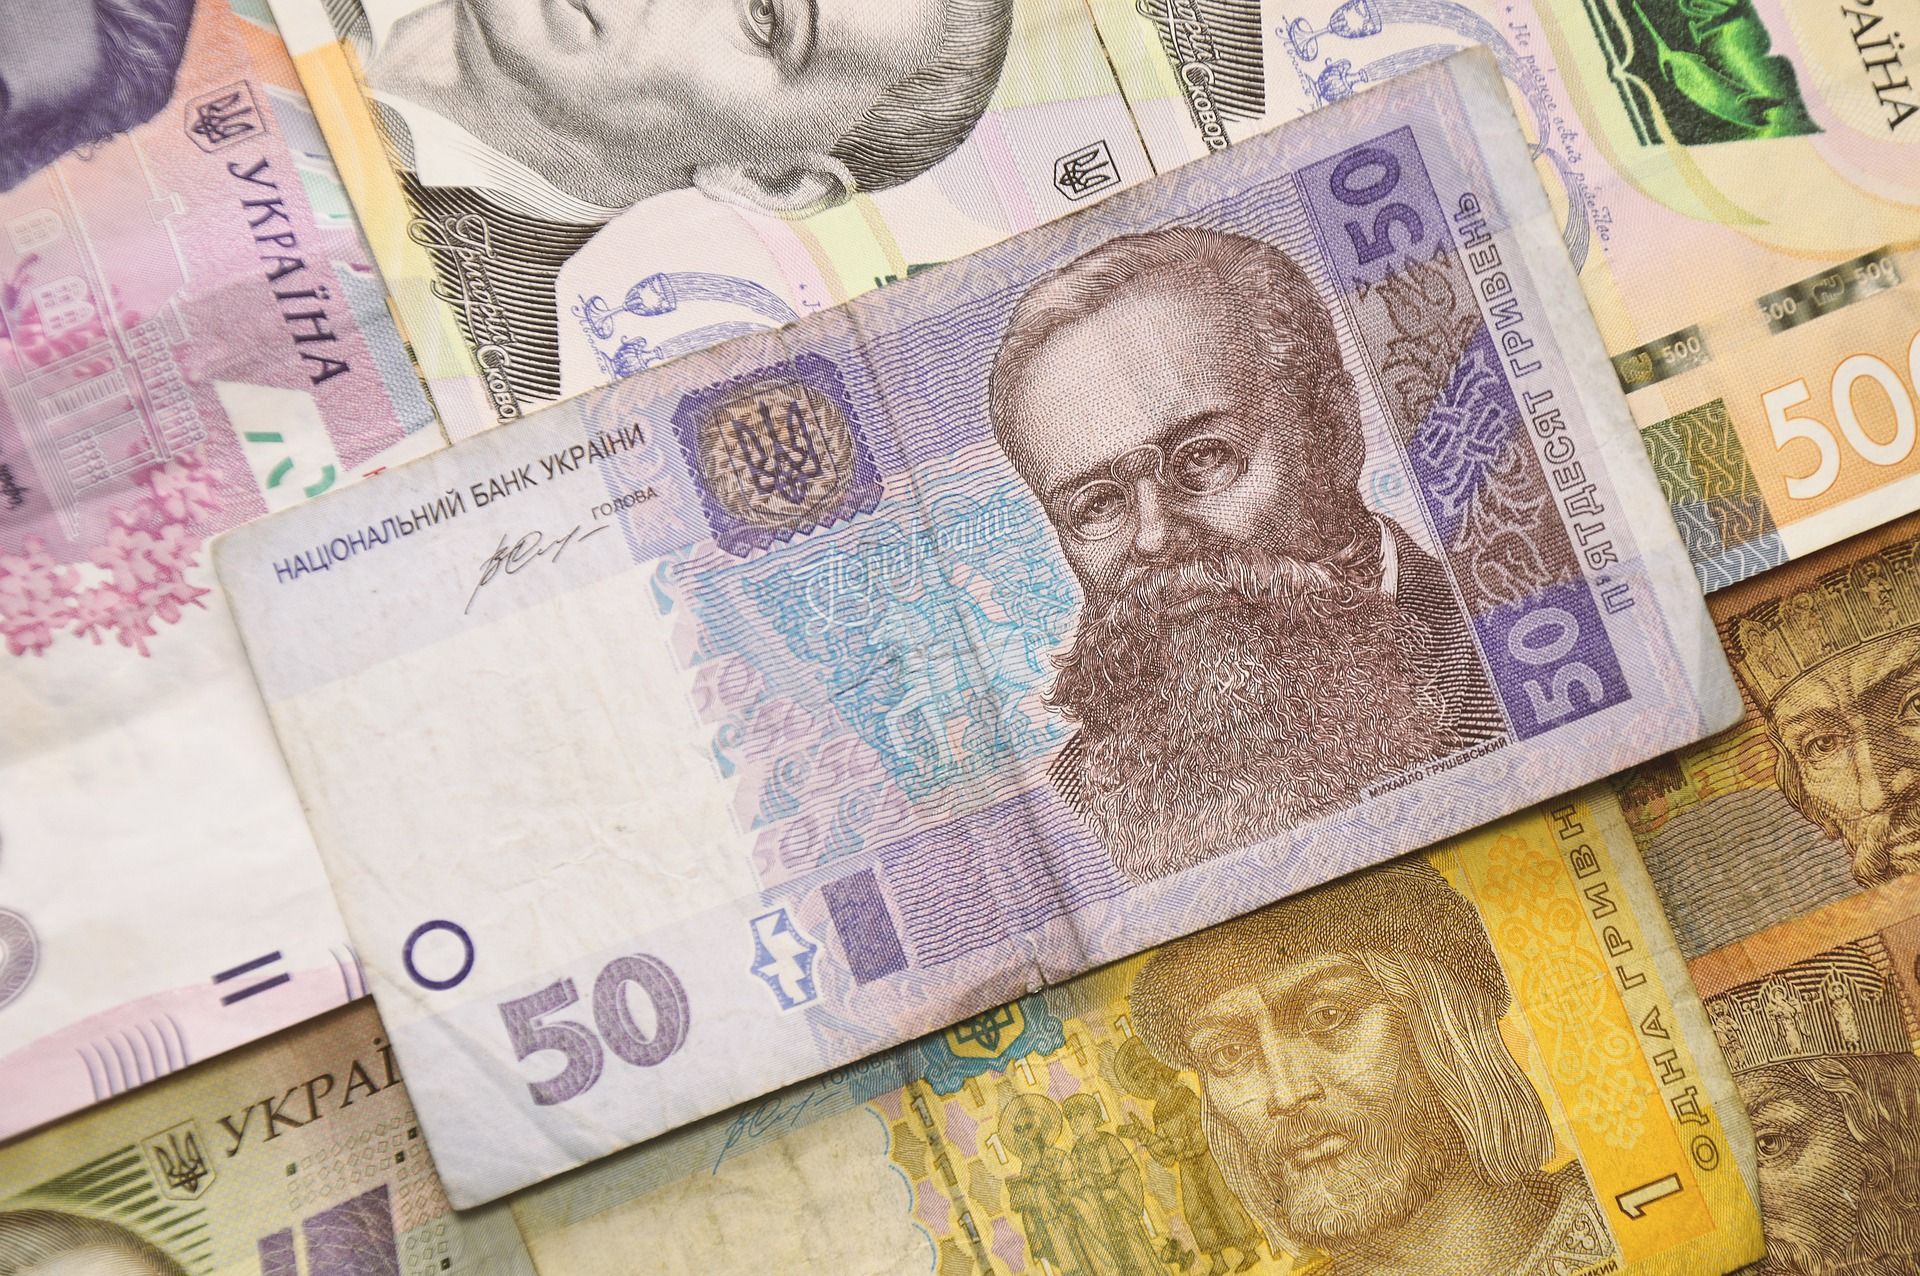 Доходы в проект госбюджета-2022 занижены на несколько миллиардов: данные Счетной палаты - Экономические новости Украины - Экономика